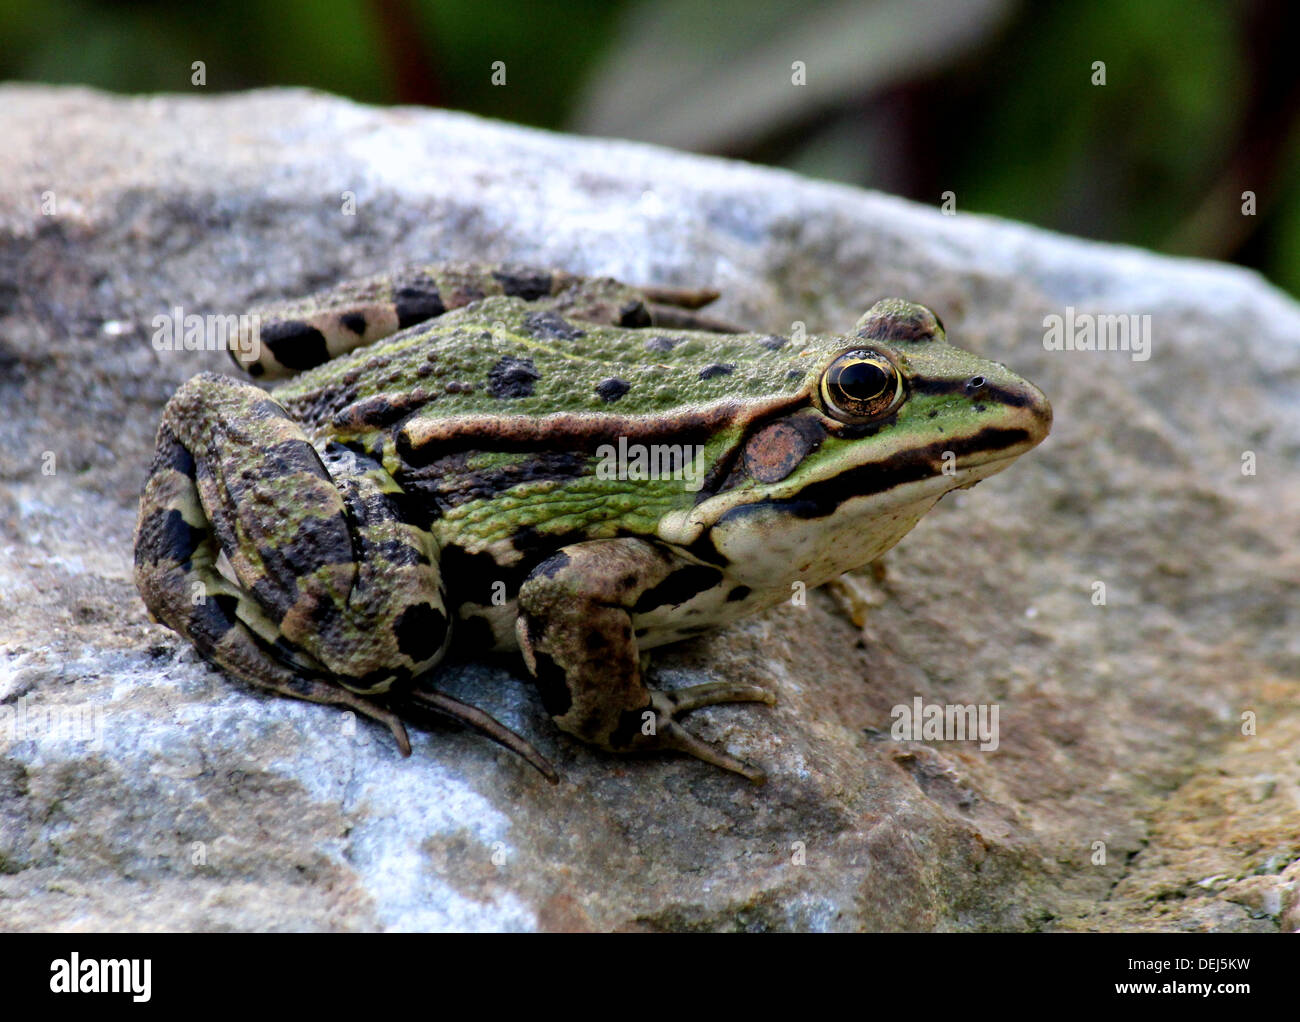 Close-up of a Eurasian Marsh Frog (Pelophylax ridibundus) posing on a rock Stock Photo